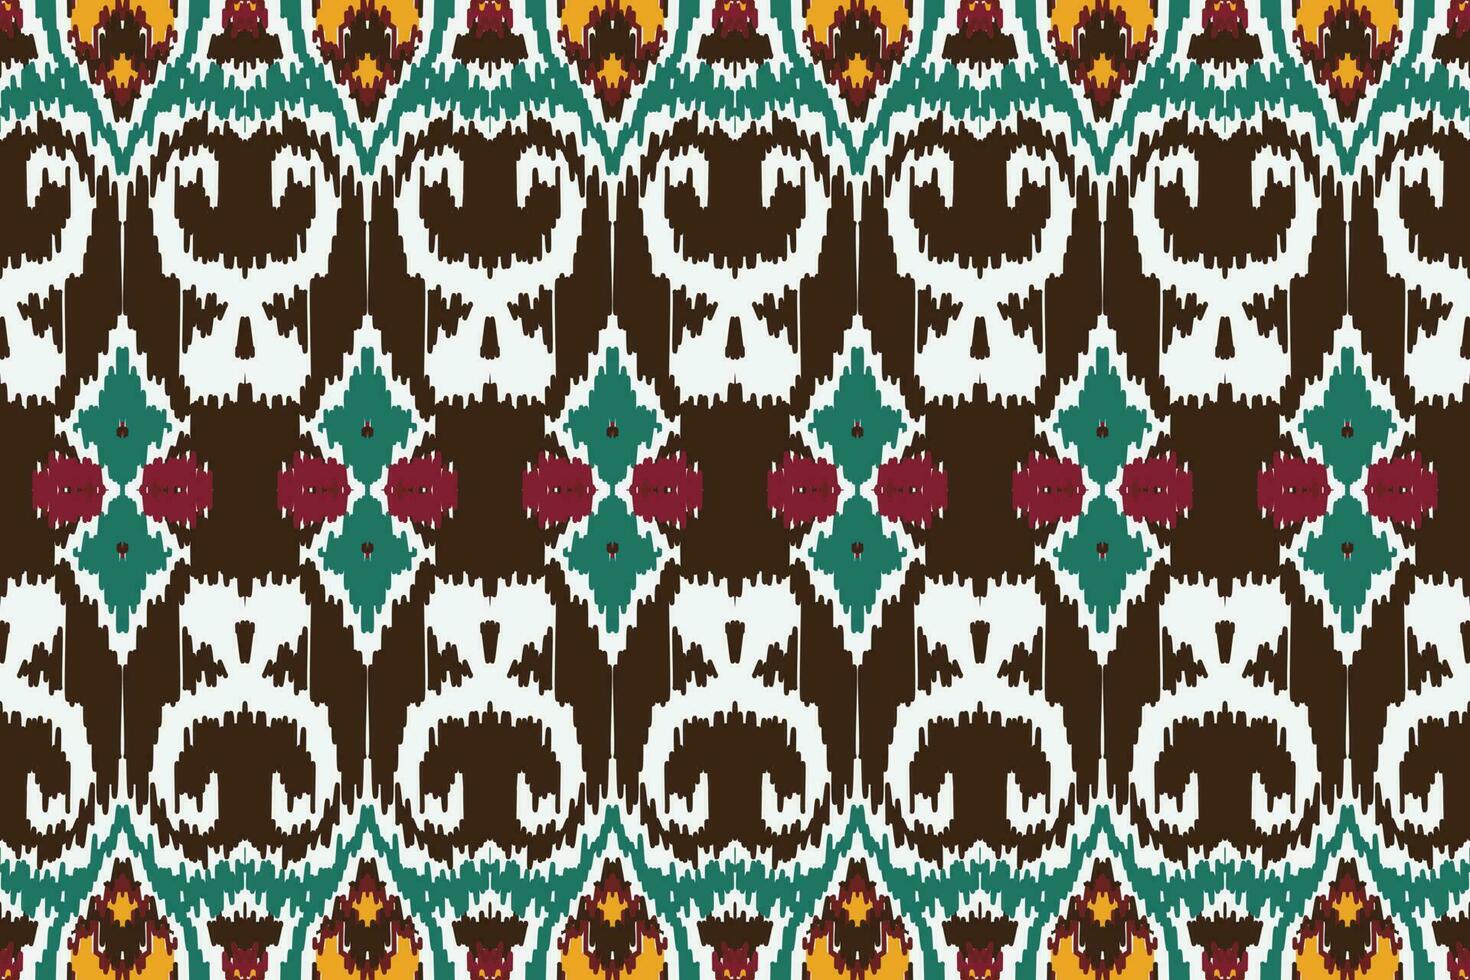 afrikanisch Ikat Paisley Muster Stickerei Hintergrund. geometrisch ethnisch orientalisch Muster traditionell. Ikat aztekisch Stil abstrakt Vektor Illustration. Design zum drucken Textur, Stoff, Saree, Sari, Teppich.